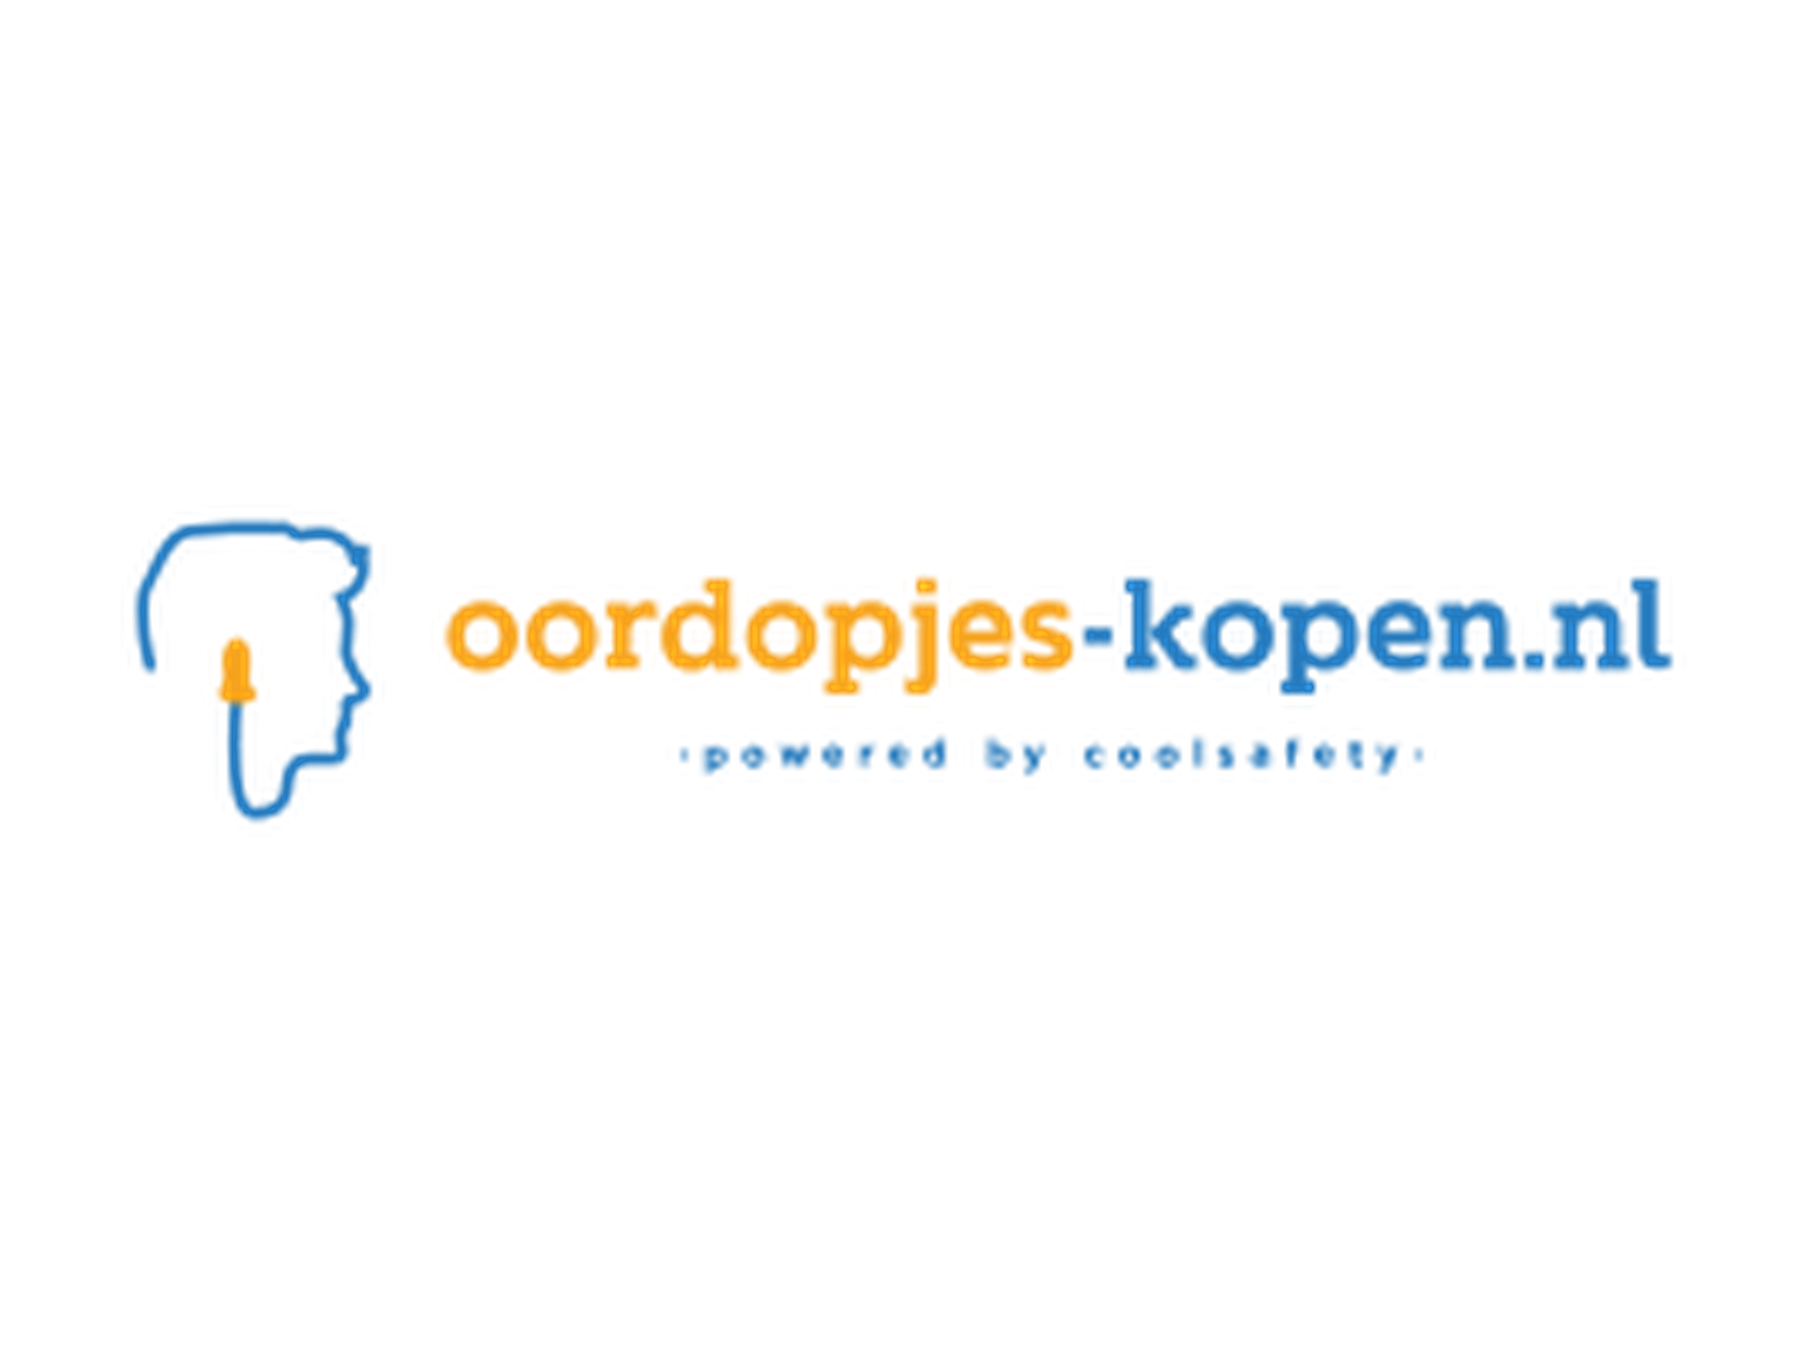 Oordopjes-kopen.nl kortingscode